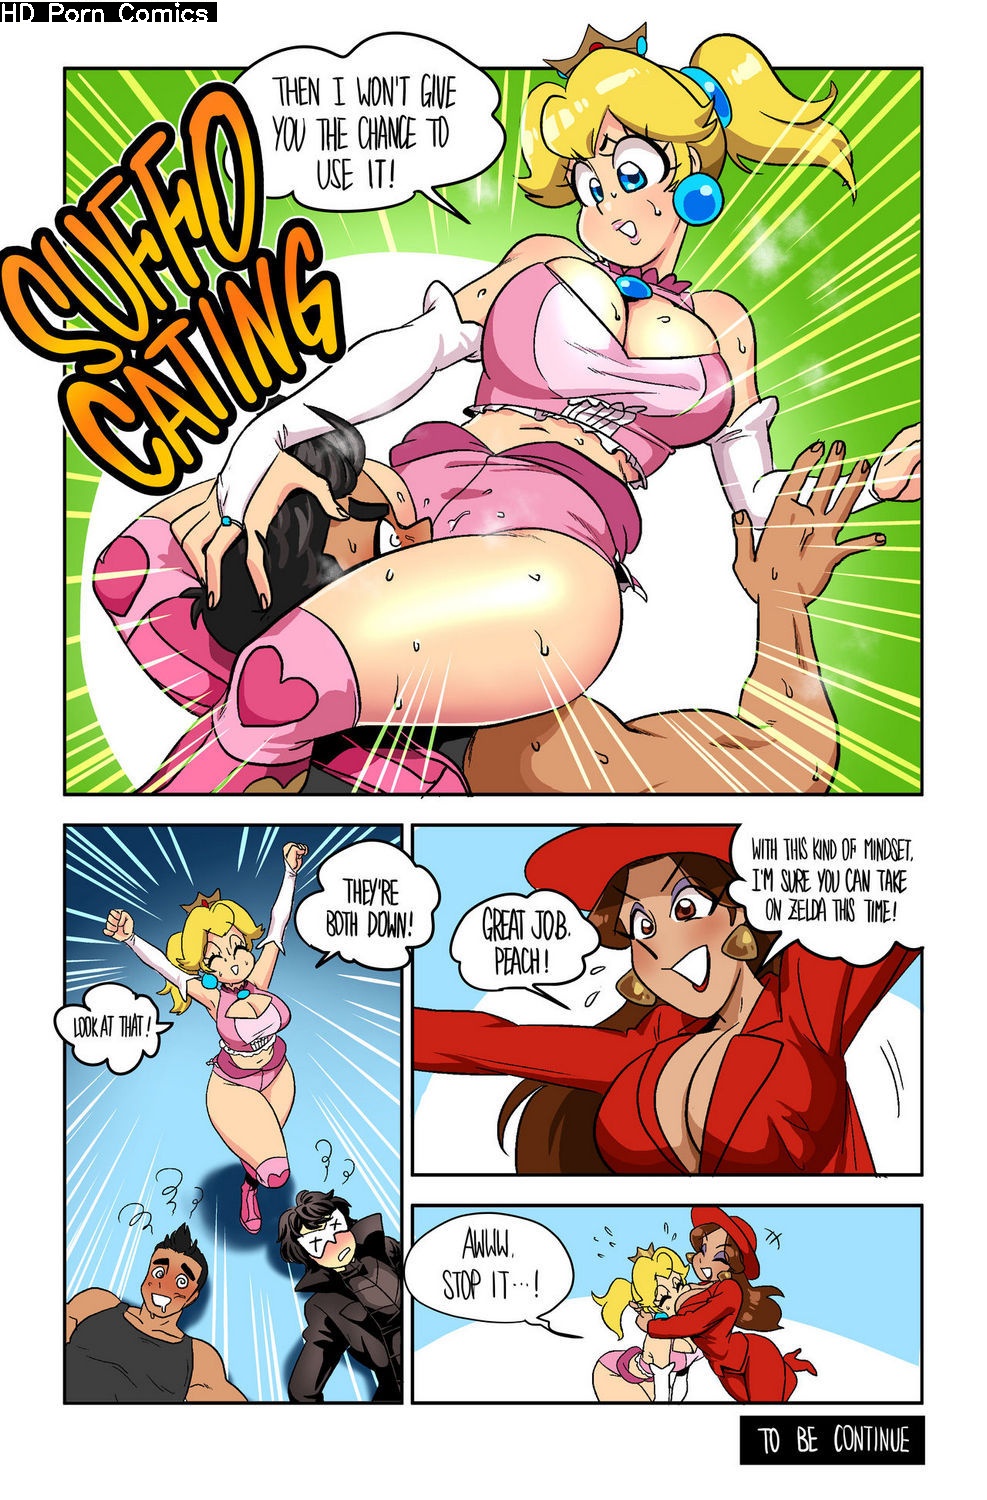 Wrestling Princess 2 - Part 1 comic porn - HD Porn Comics